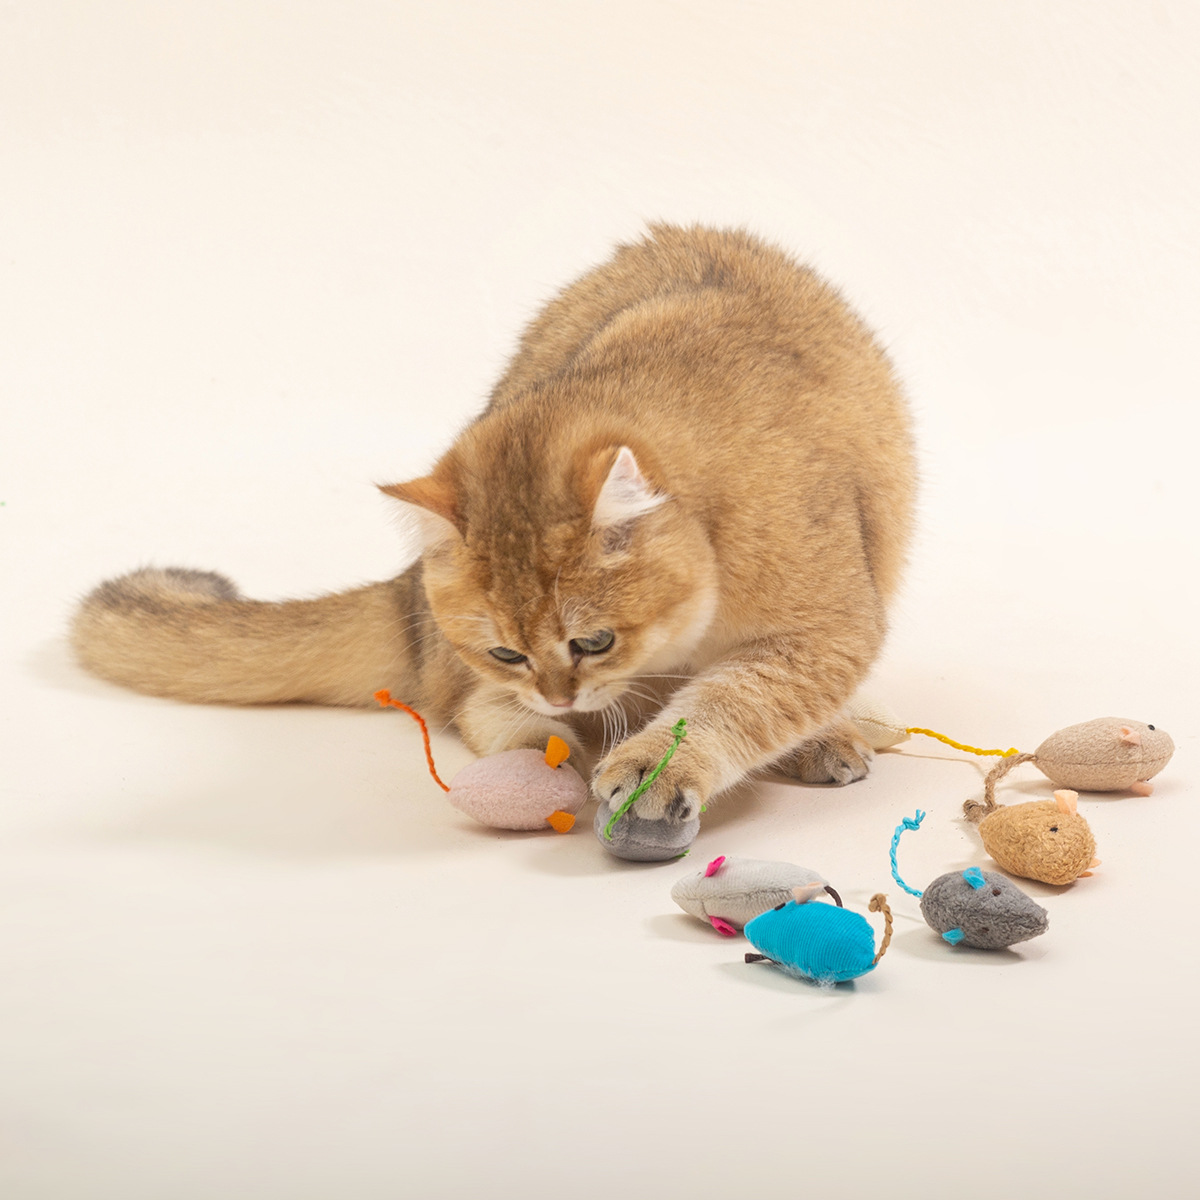 Plush Mouse Contains Catnip Suit Mouse Scratch-resistant Bite-resistant Molars Teasing Cat Interactive Factory Spot